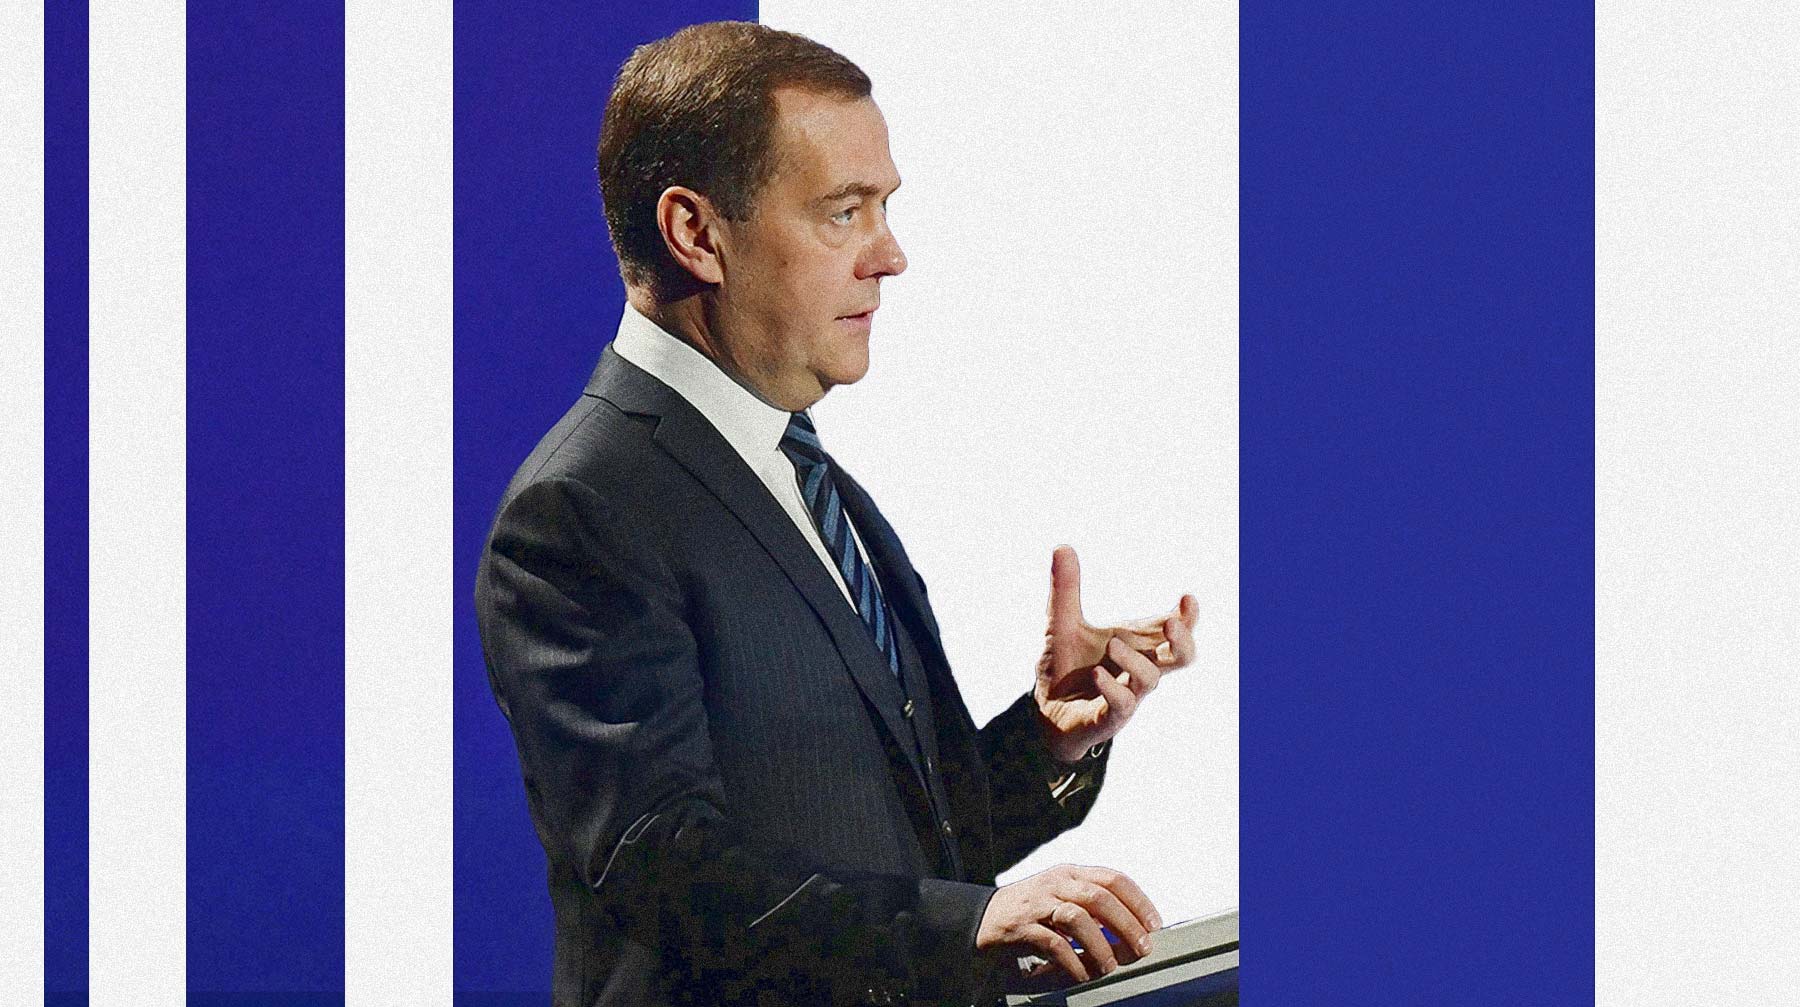 Премьер-министр сказал в Госдуме, что Россия должна прочно закрепиться в пятерке сильнейших экономик мира Председатель правительства РФ Дмитрий Медведев